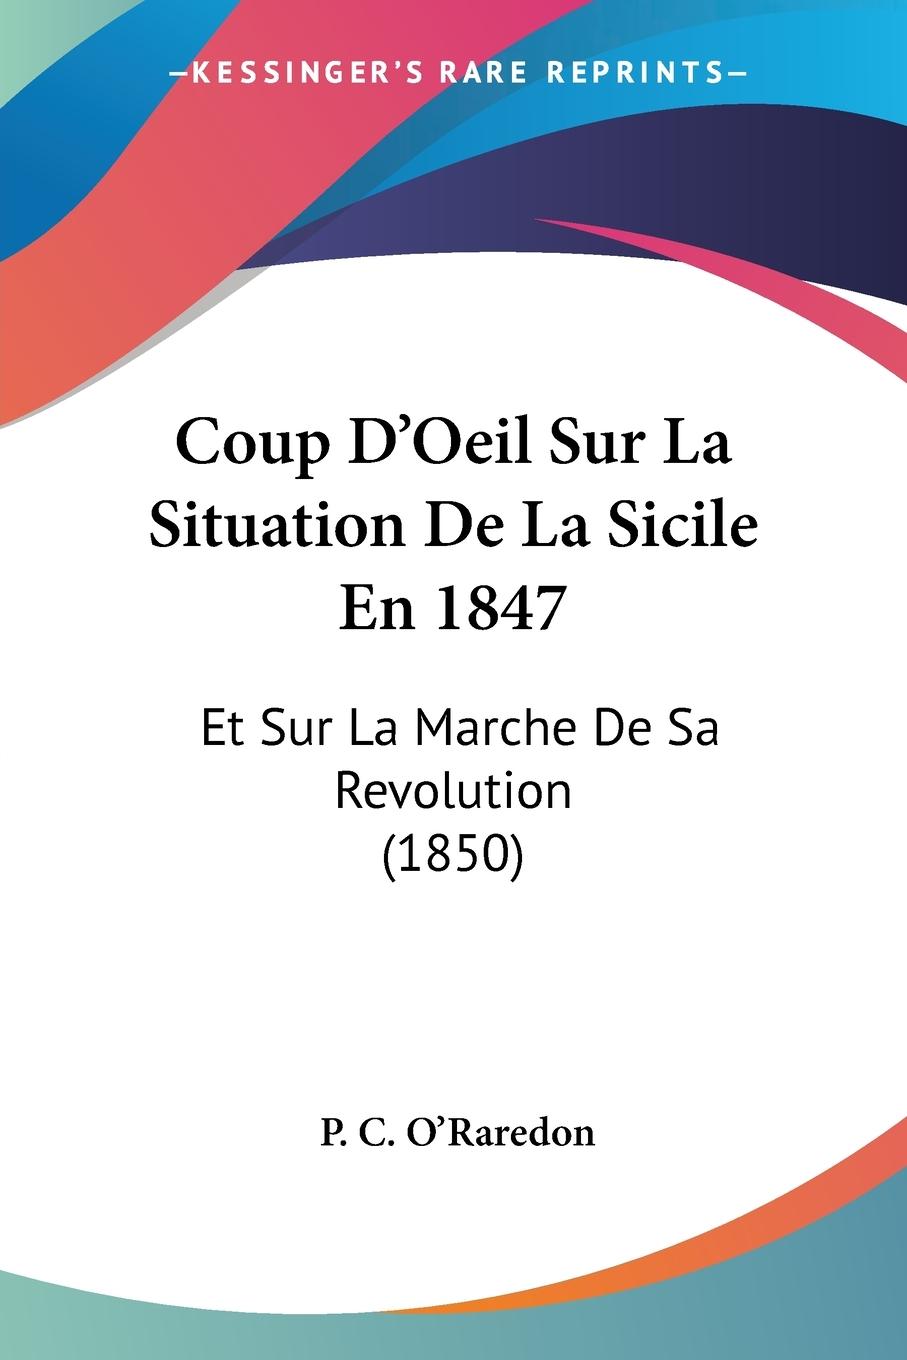 Coup D Oeil Sur La Situation De La Sicile En 1847 - O Raredon, P. C.